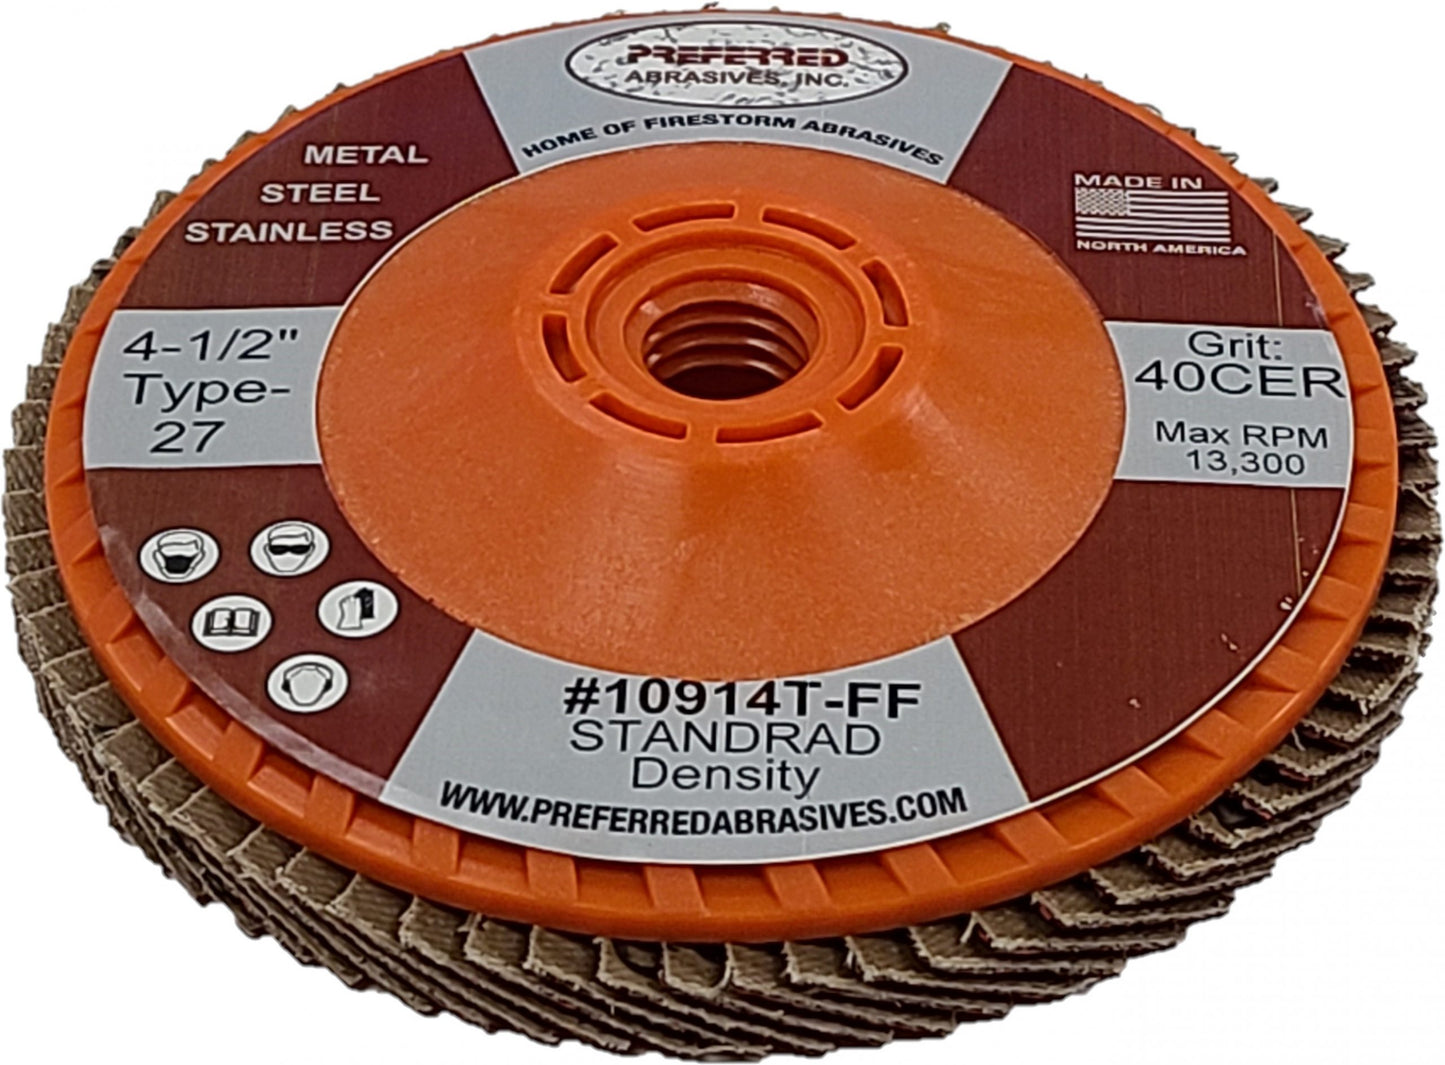 Preferred Abrasives Firestorm FasTrim® Hi-Density Trimmable Flap Discs 40 Ceramic Grit 10919T-FF